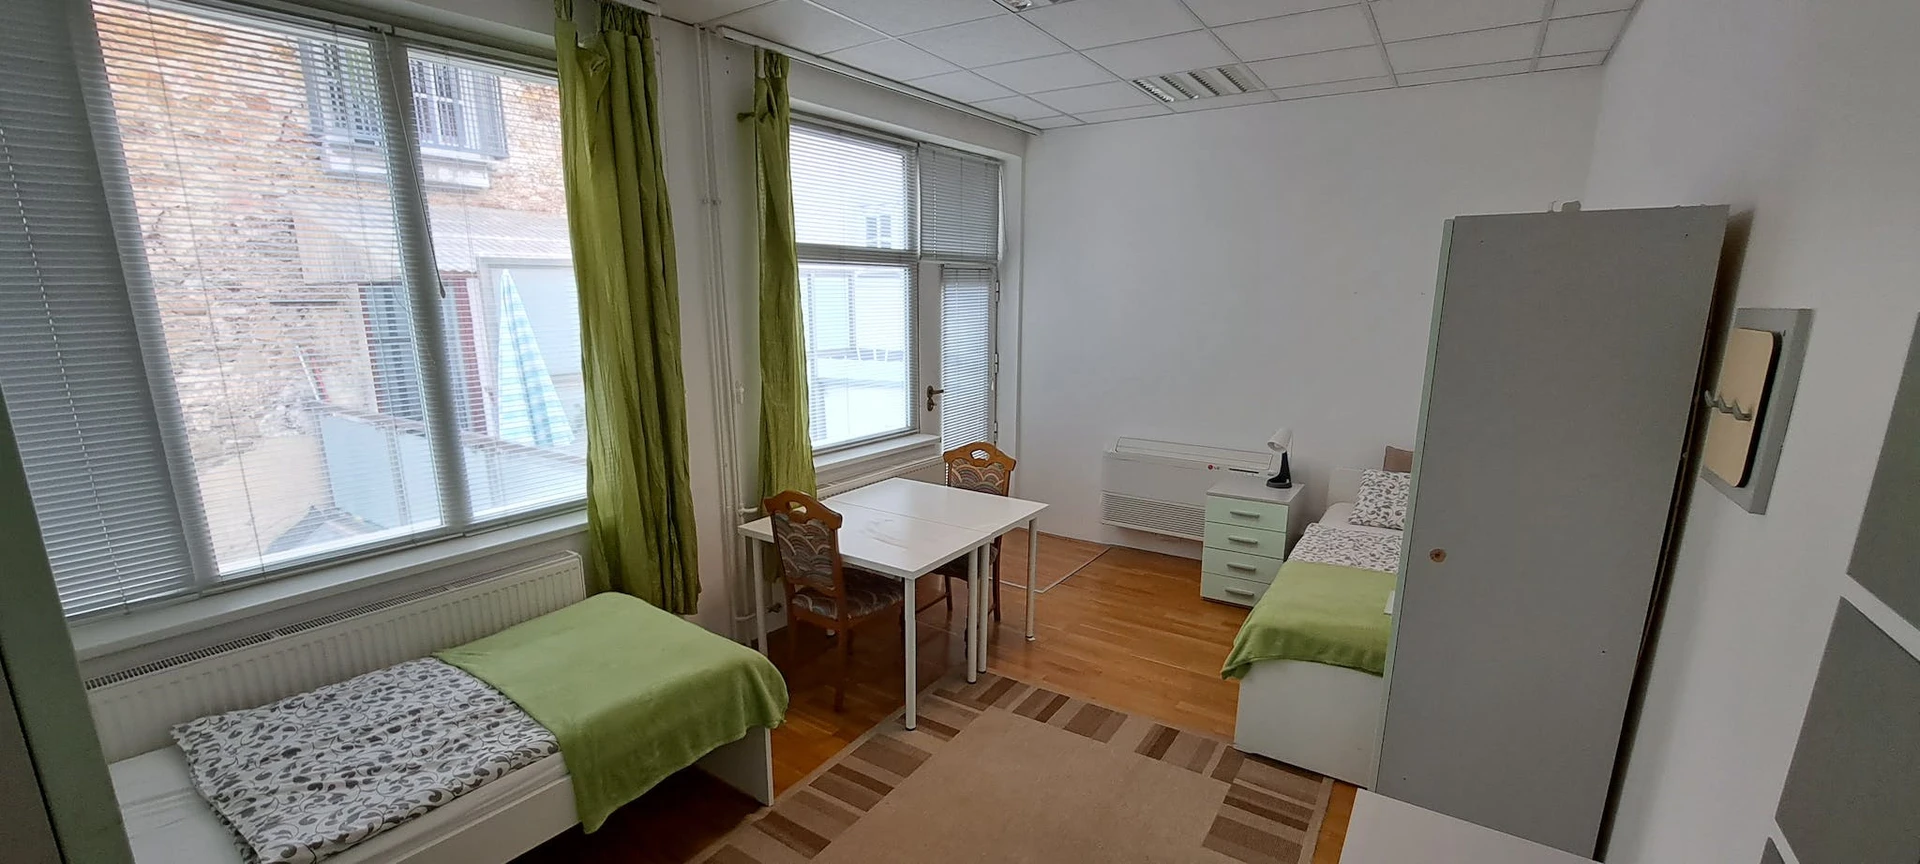 Alquiler de habitación compartida muy luminosa en Liubliana